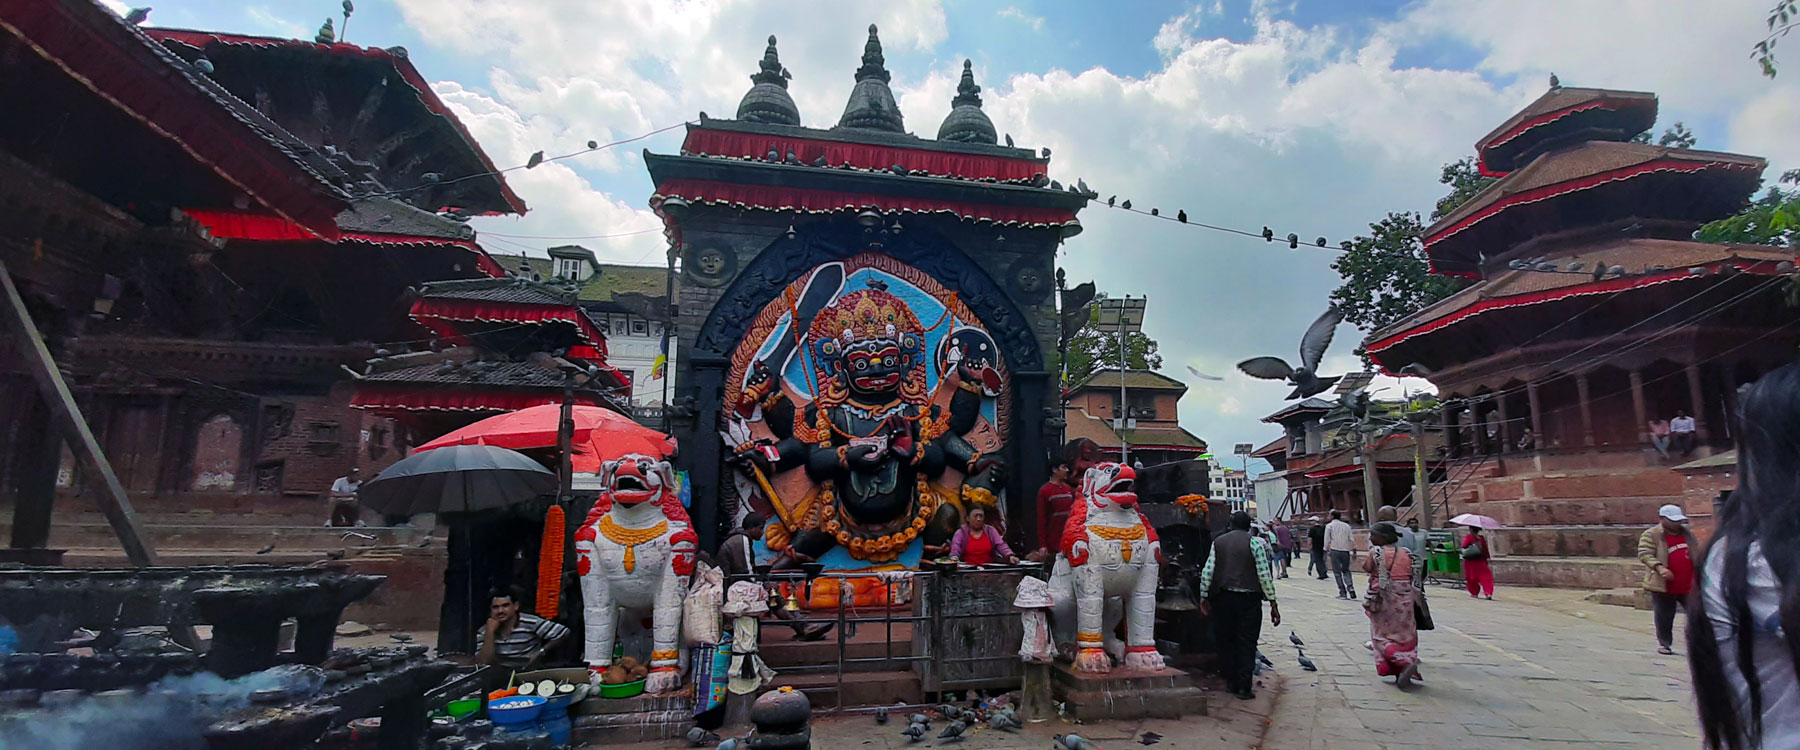 day-tour-at-kathmandu-durbar-square.jpg